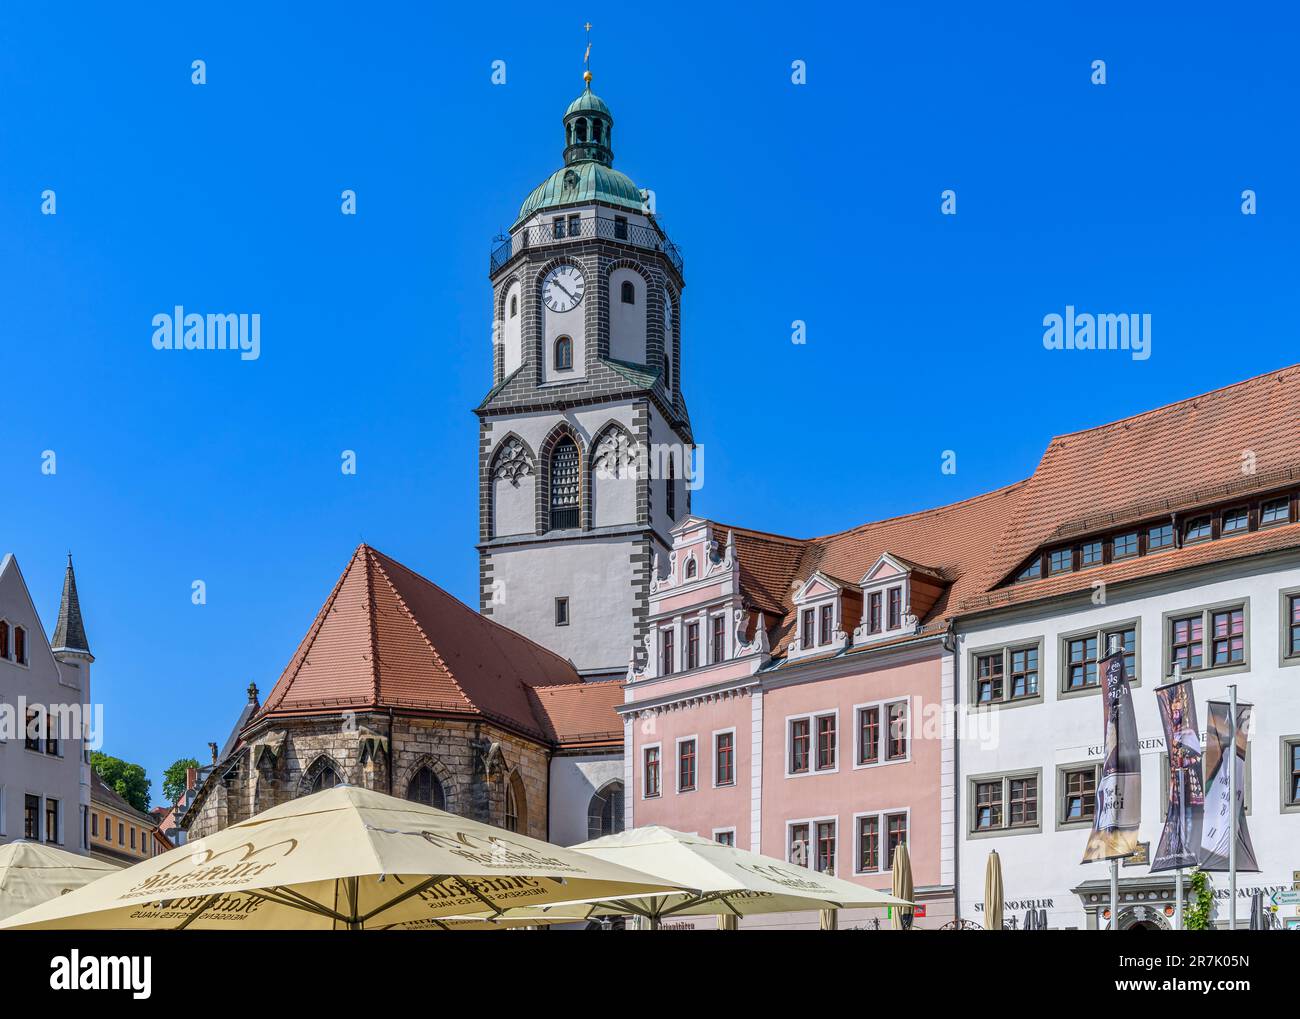 La belle vieille ville de Meissen près de Dresde dans l'état libre de Saxe, Allemagne. Prise de vue le jour de l'été avec un ciel bleu vif. Banque D'Images